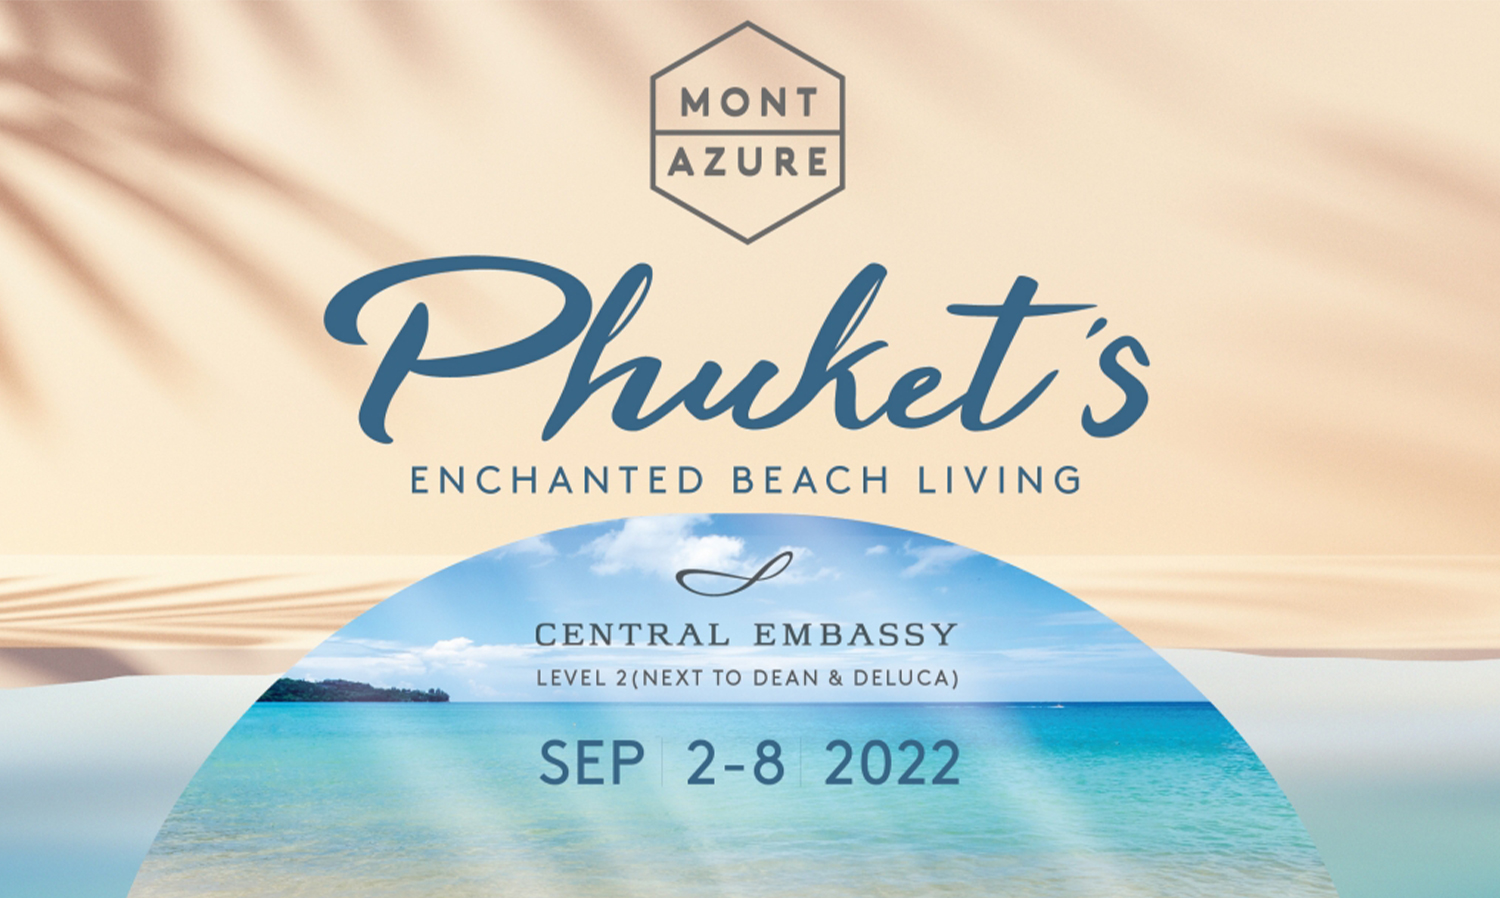 มอนท์เอซัวร์ ภูเก็ต จัดงาน Phuket is Enchanted Beach Living 2 - 8 ก.ย. นี้  นำเสนอที่สุดแห่งการพักอาศัยเหนือระดับ บนทำเลพรีเมียมริมหาดกมลา พร้อมข้อเสนอสุดพิเศษส่วนลดสูงสุดมูลค่ากว่า 10 ล้านบาท